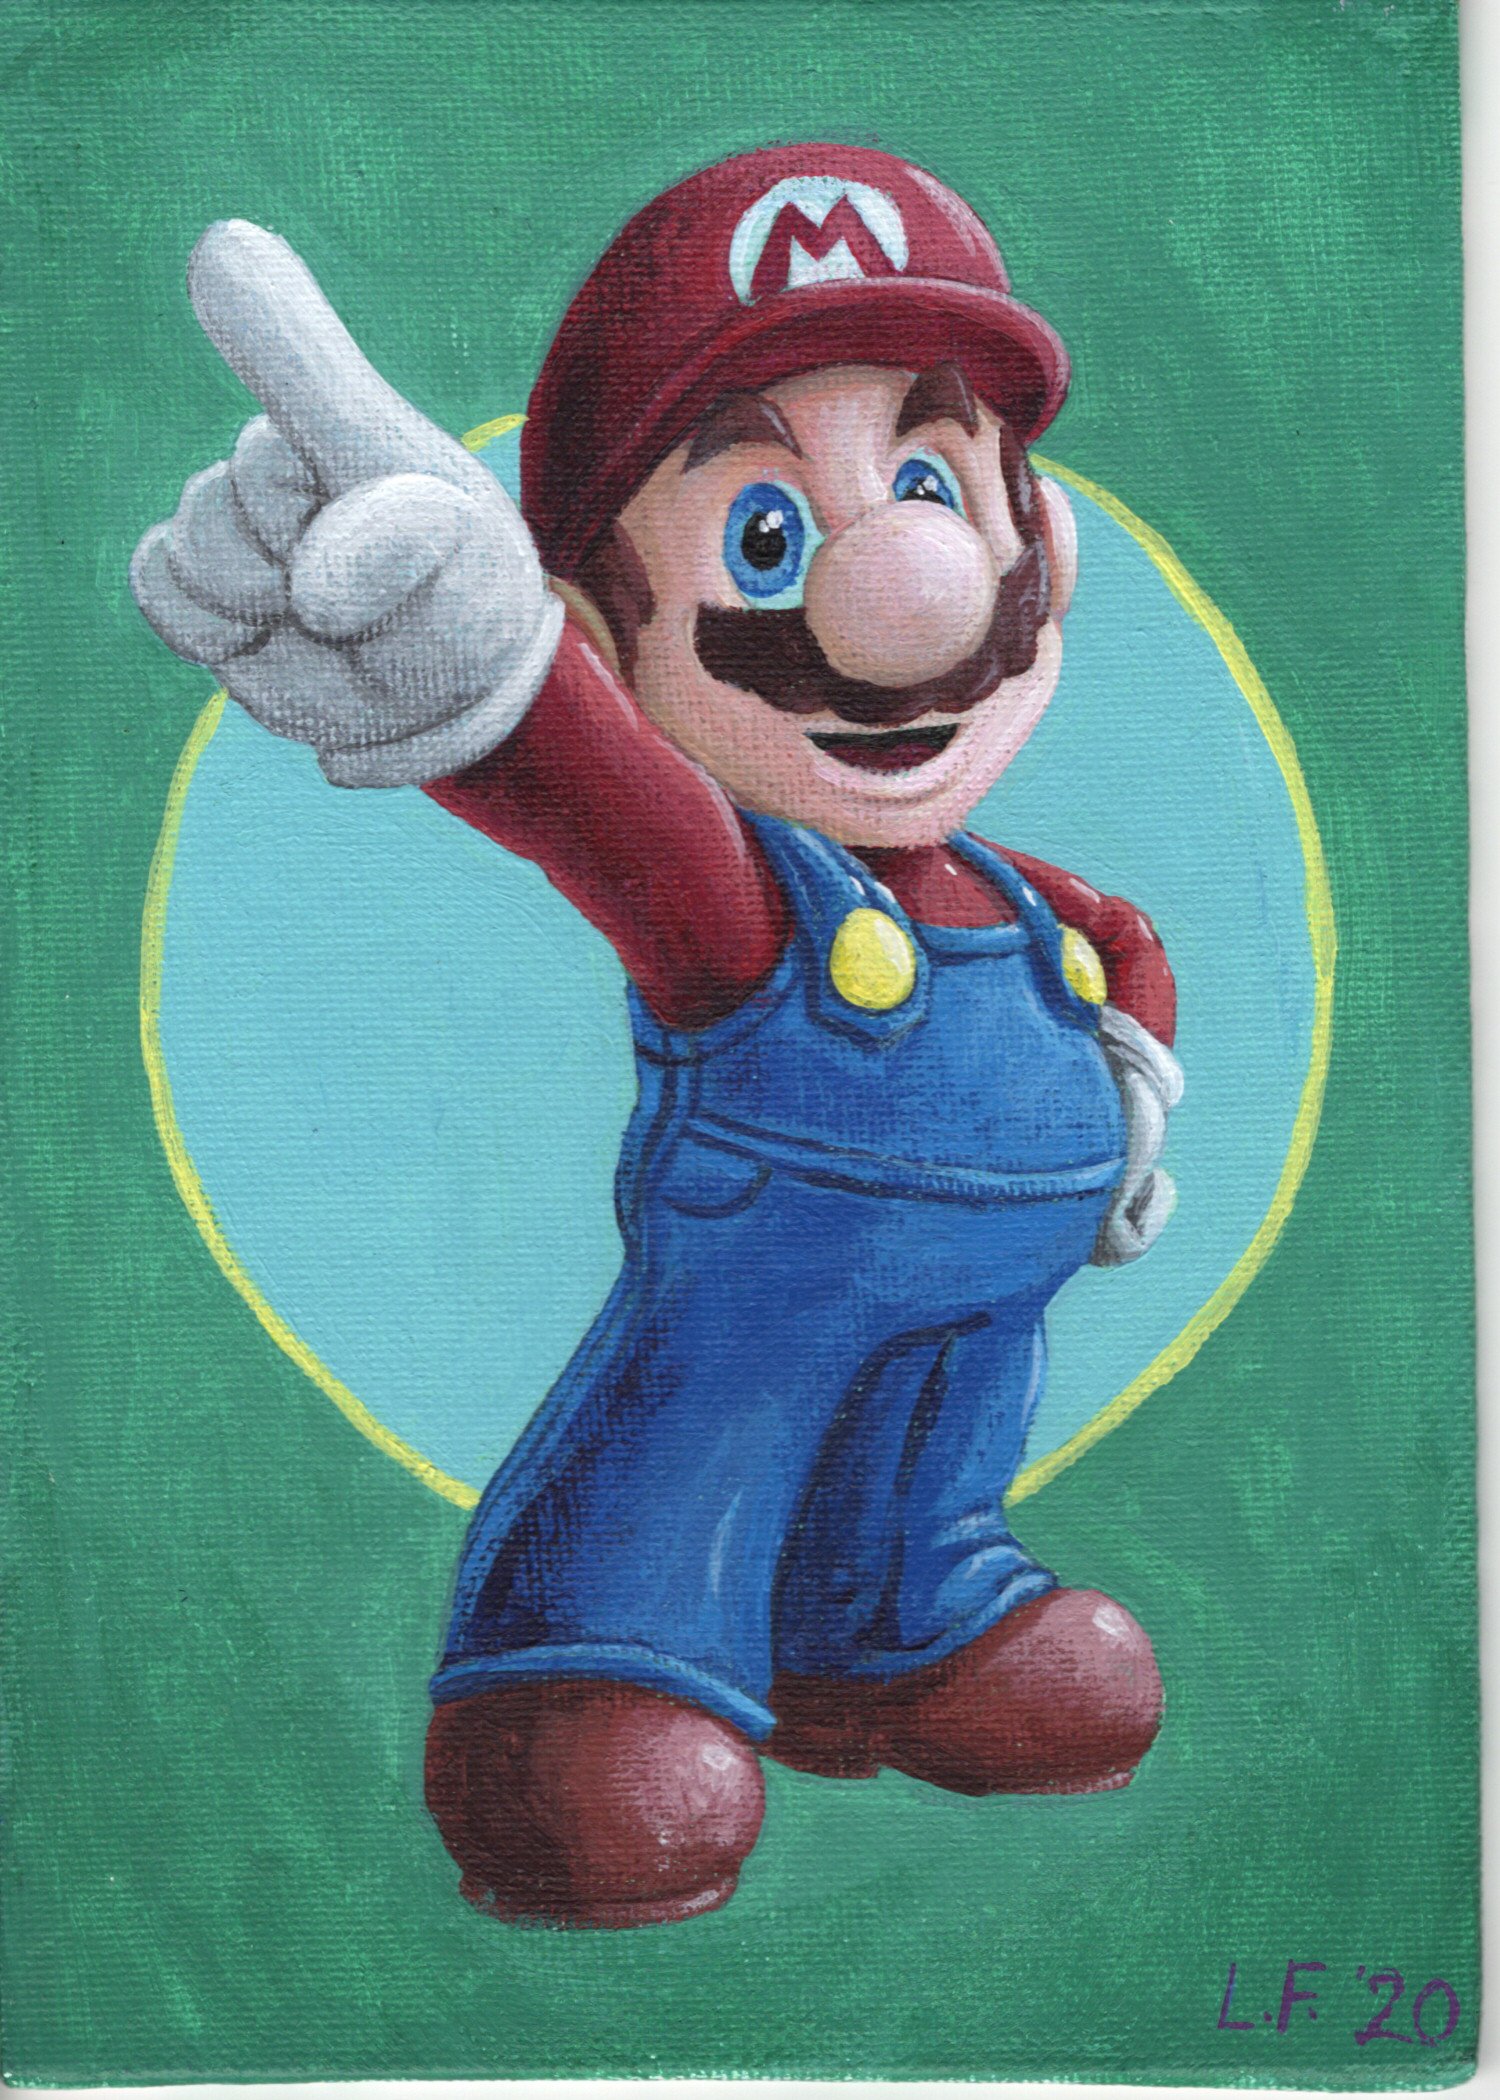 Artwork: Mario